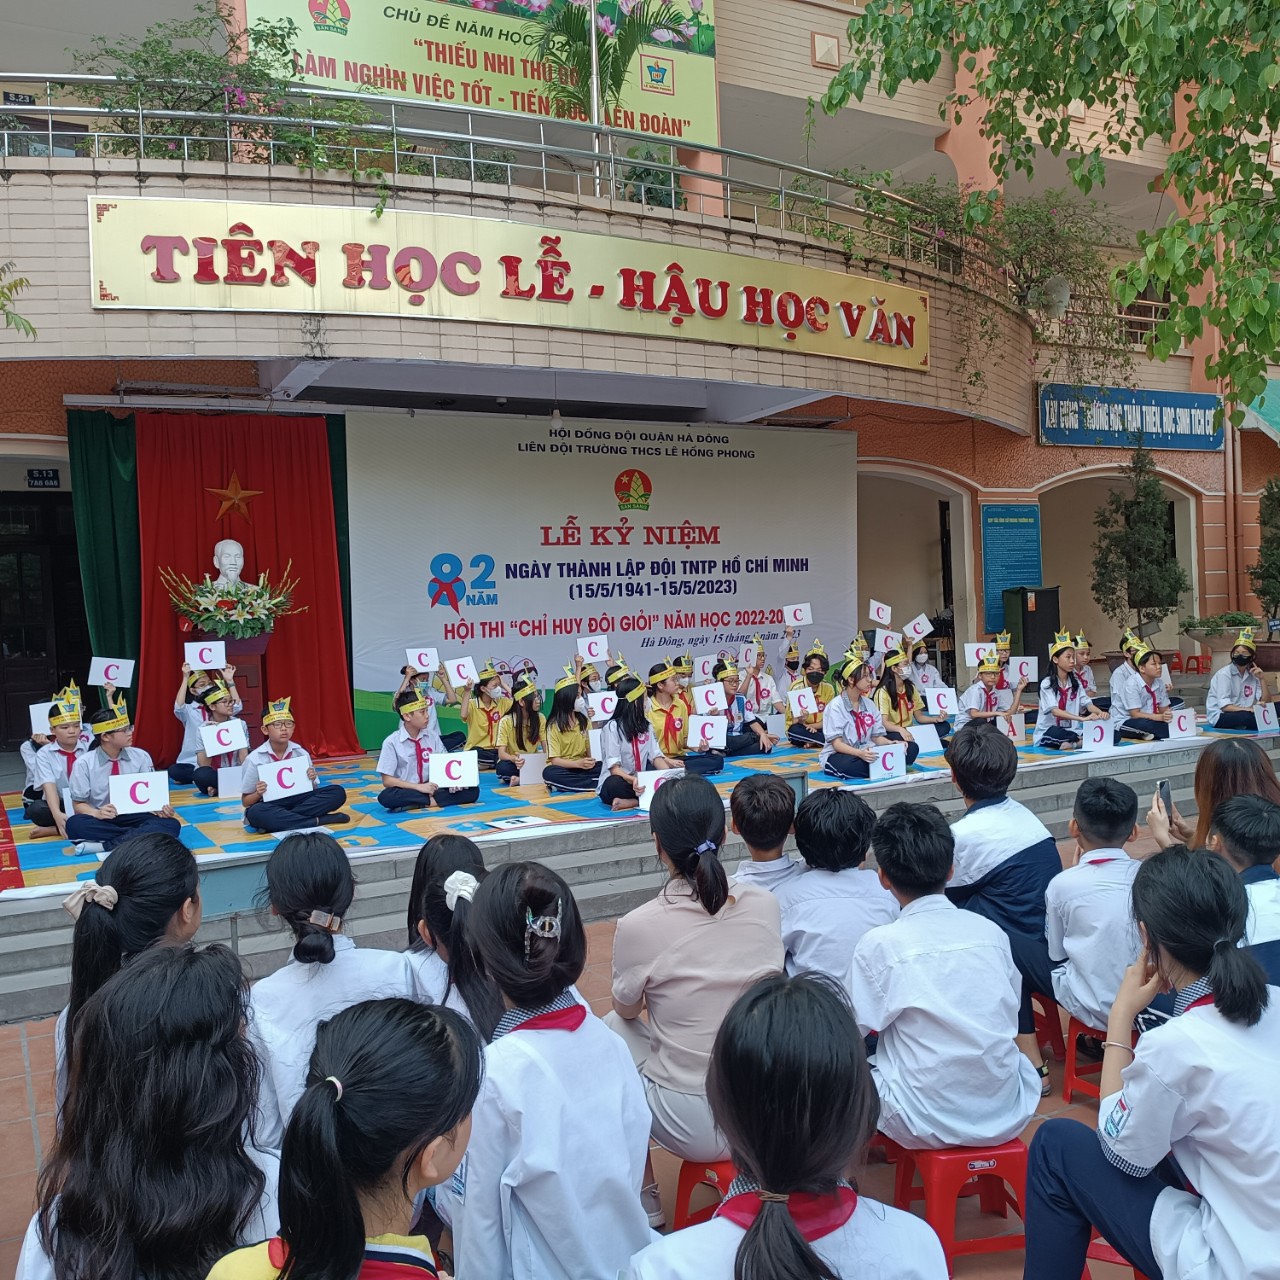 Lễ kỷ niệm 82 năm Ngày thành lập Đội Thiếu niên tiền phong Hồ Chí Minh và Hội thi " Chỉ huy Đội giỏi năm học 2022 - 2023